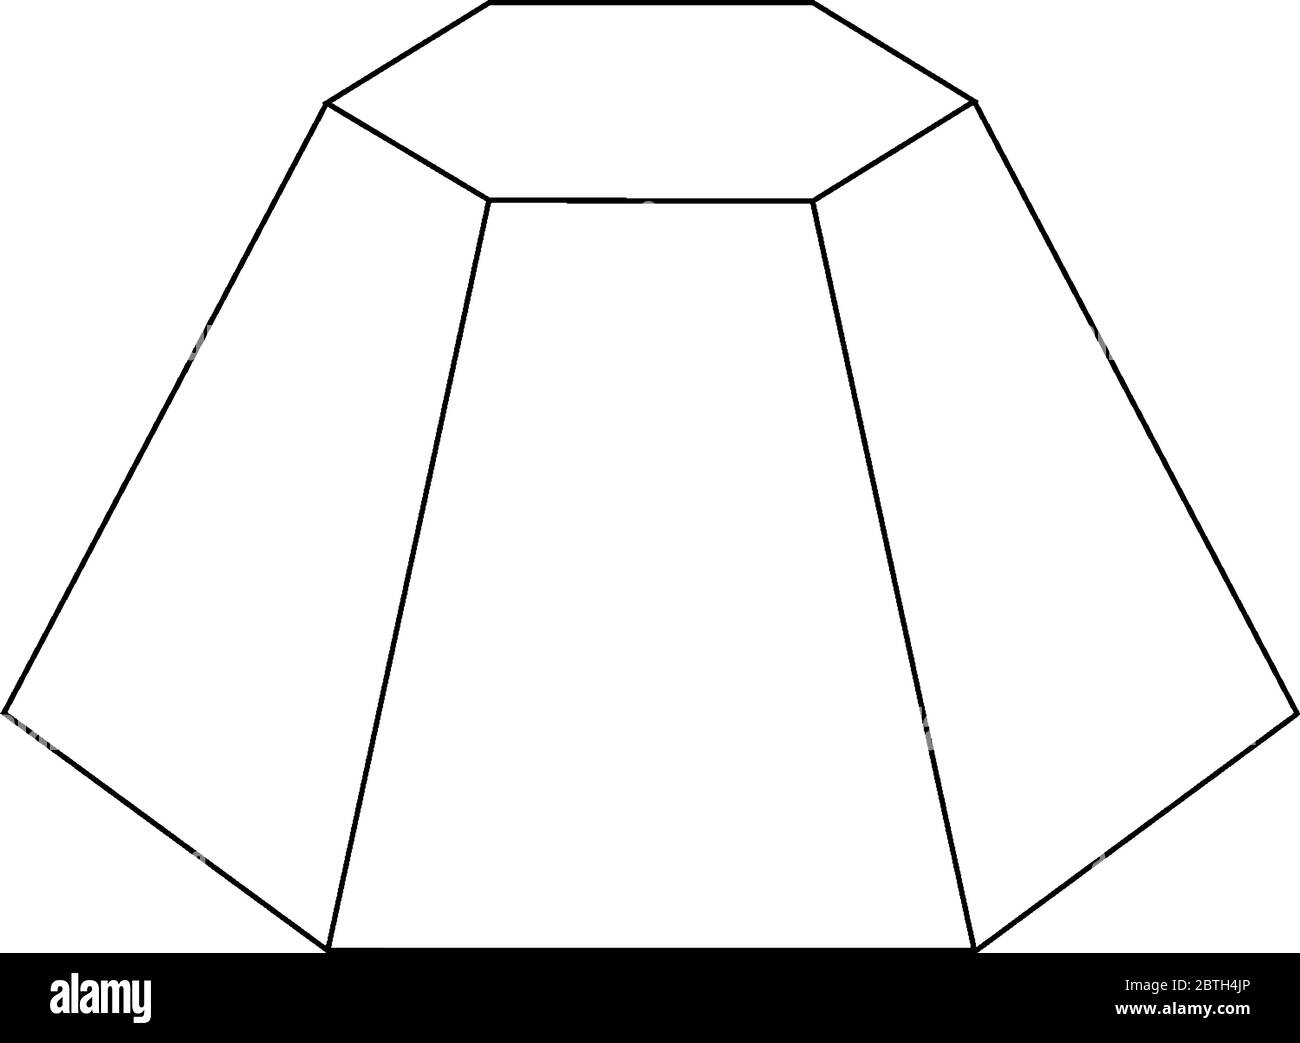 C'est un frustum hexagonal à l'envers qui est coupé par plan parallèle à la base de la pyramide hexagonale, vintage dessin de ligne ou gravure illustrat Illustration de Vecteur